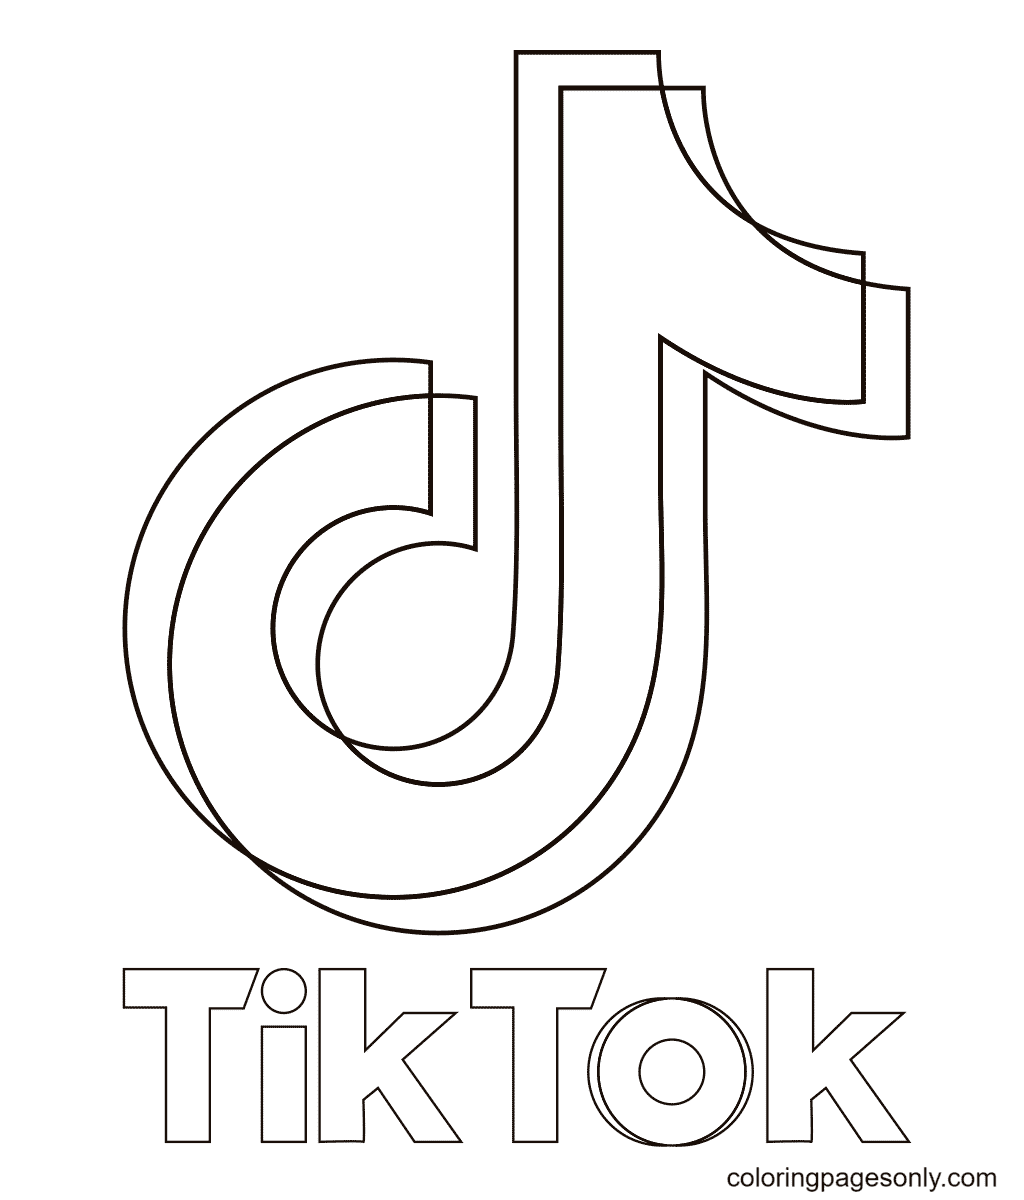 来自 TikTok 的 Tik Tok 徽标